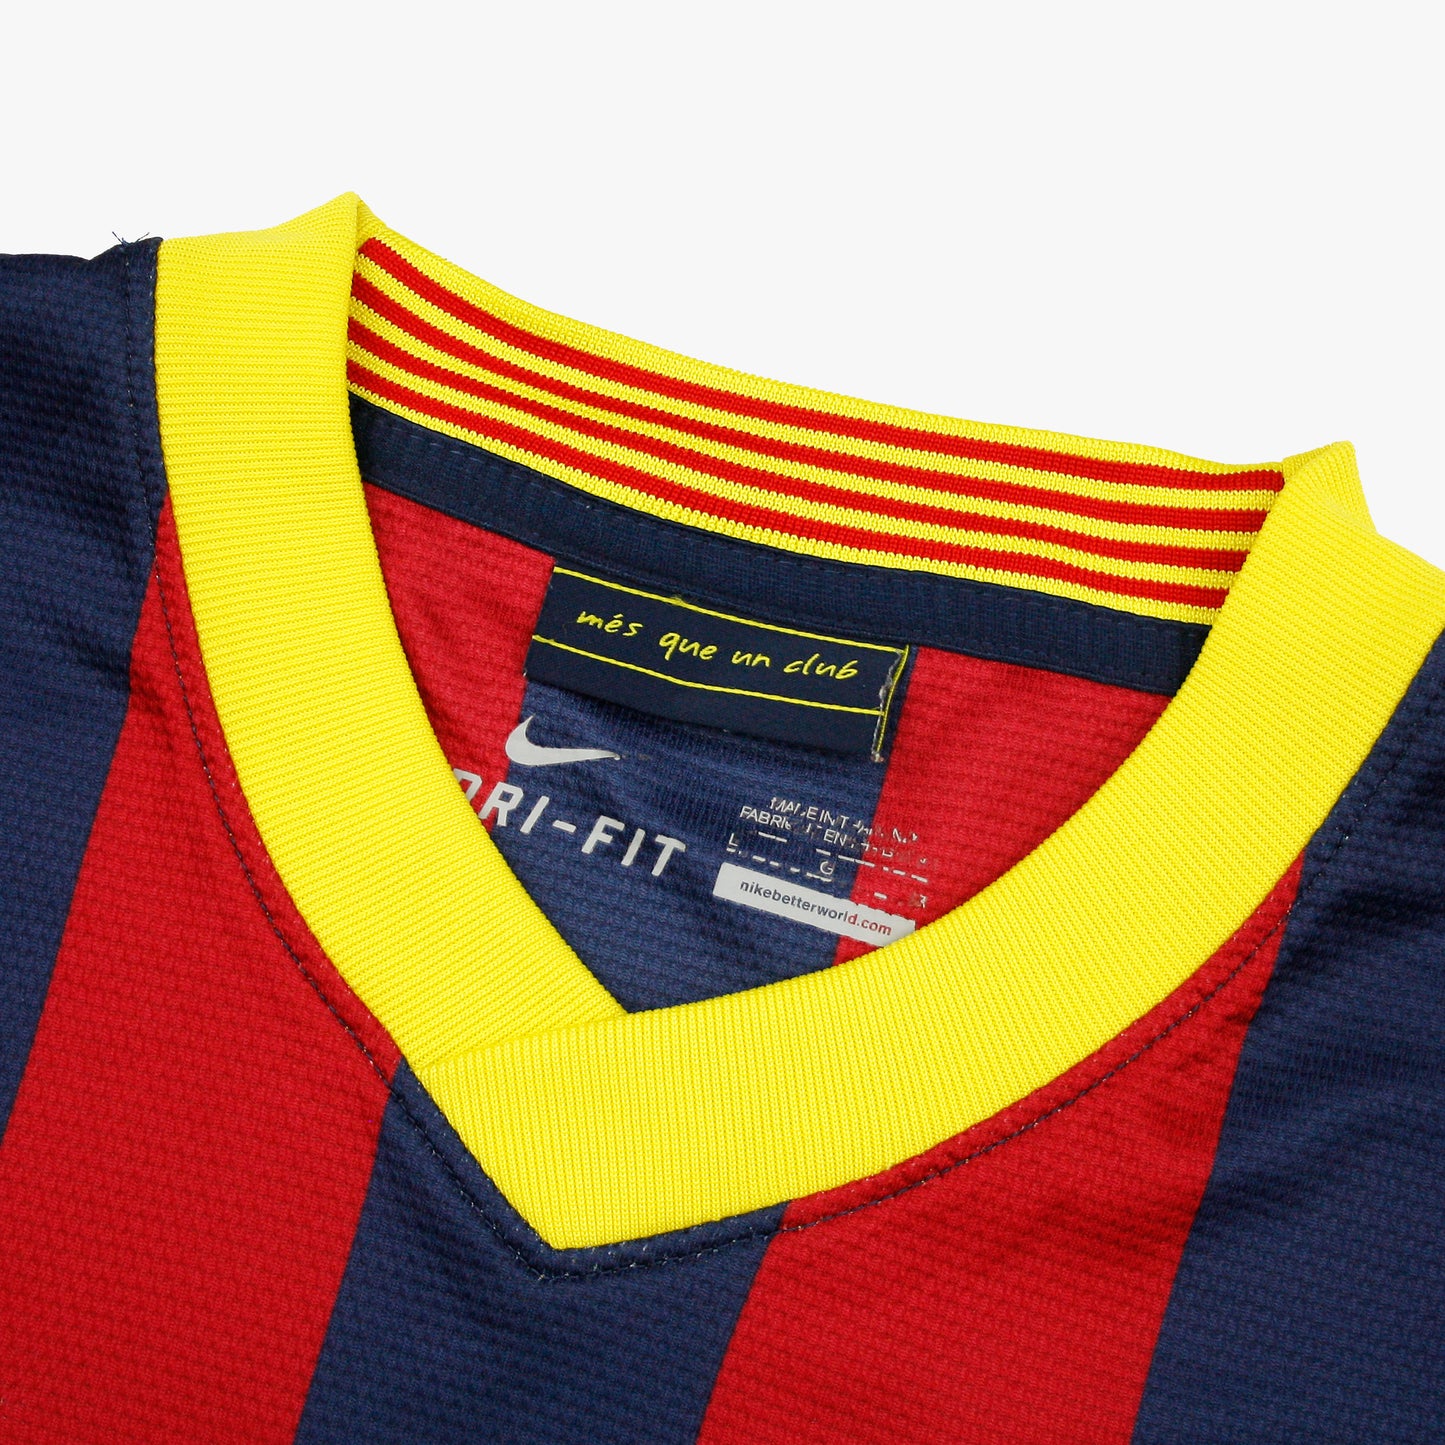 Barcelona 13/14 • Camiseta Local • L • Messi #10